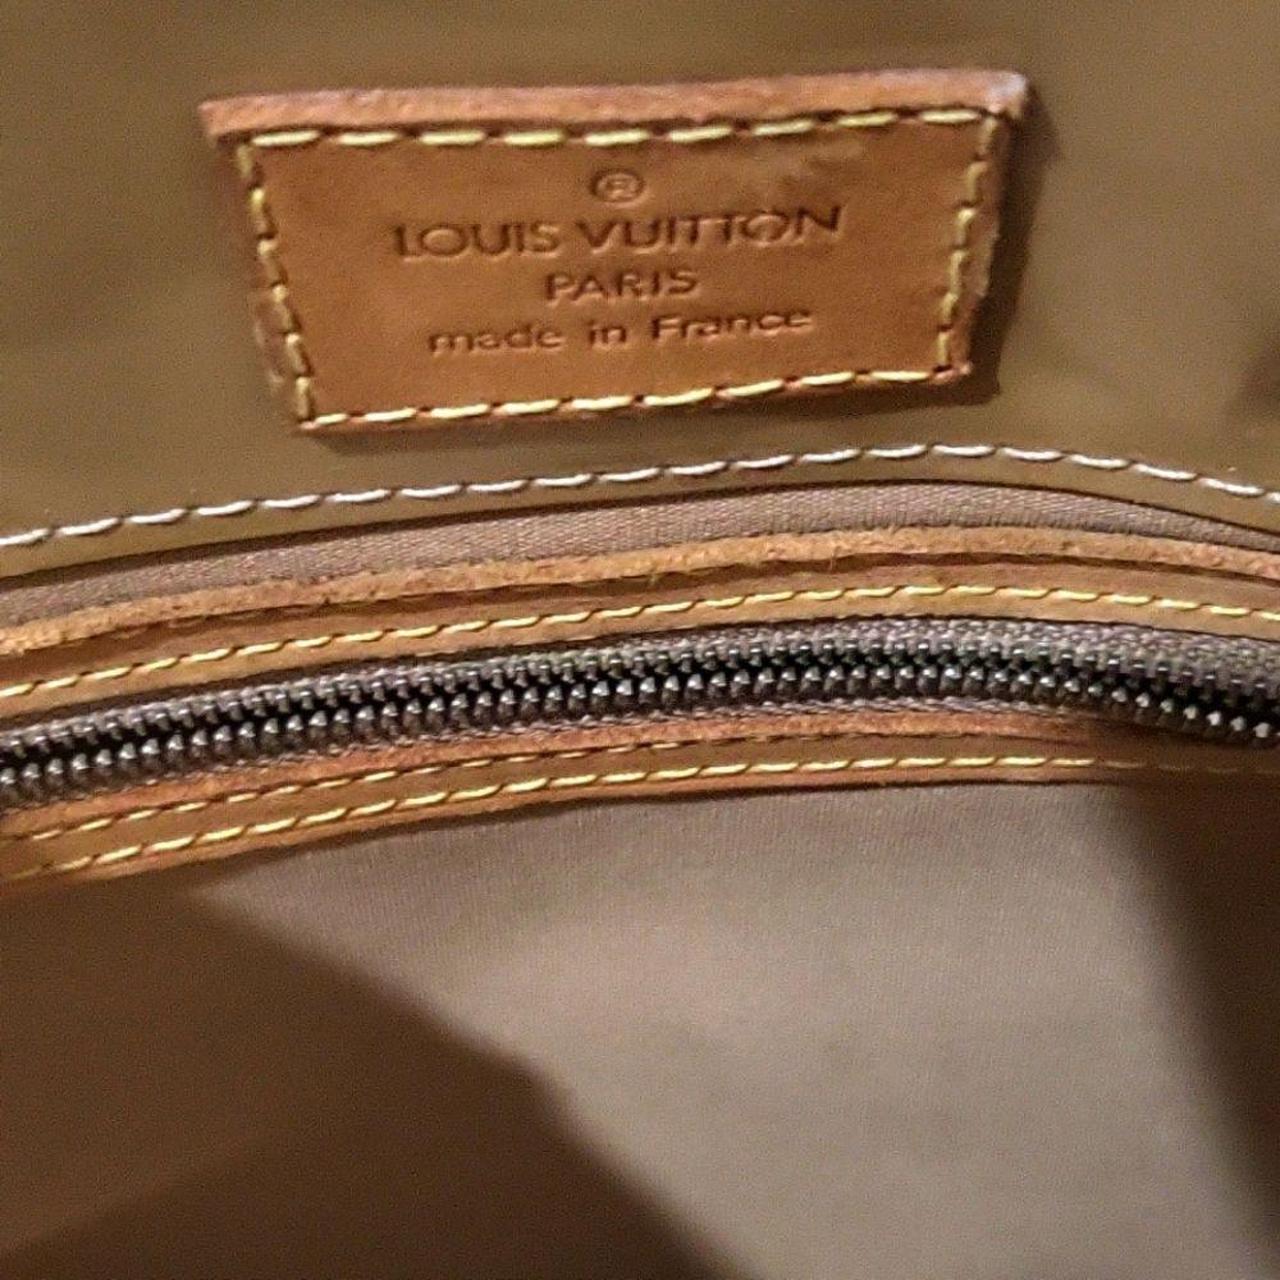 ✨✨✨ Authentic pre-owned Louis Vuitton Monogram - Depop